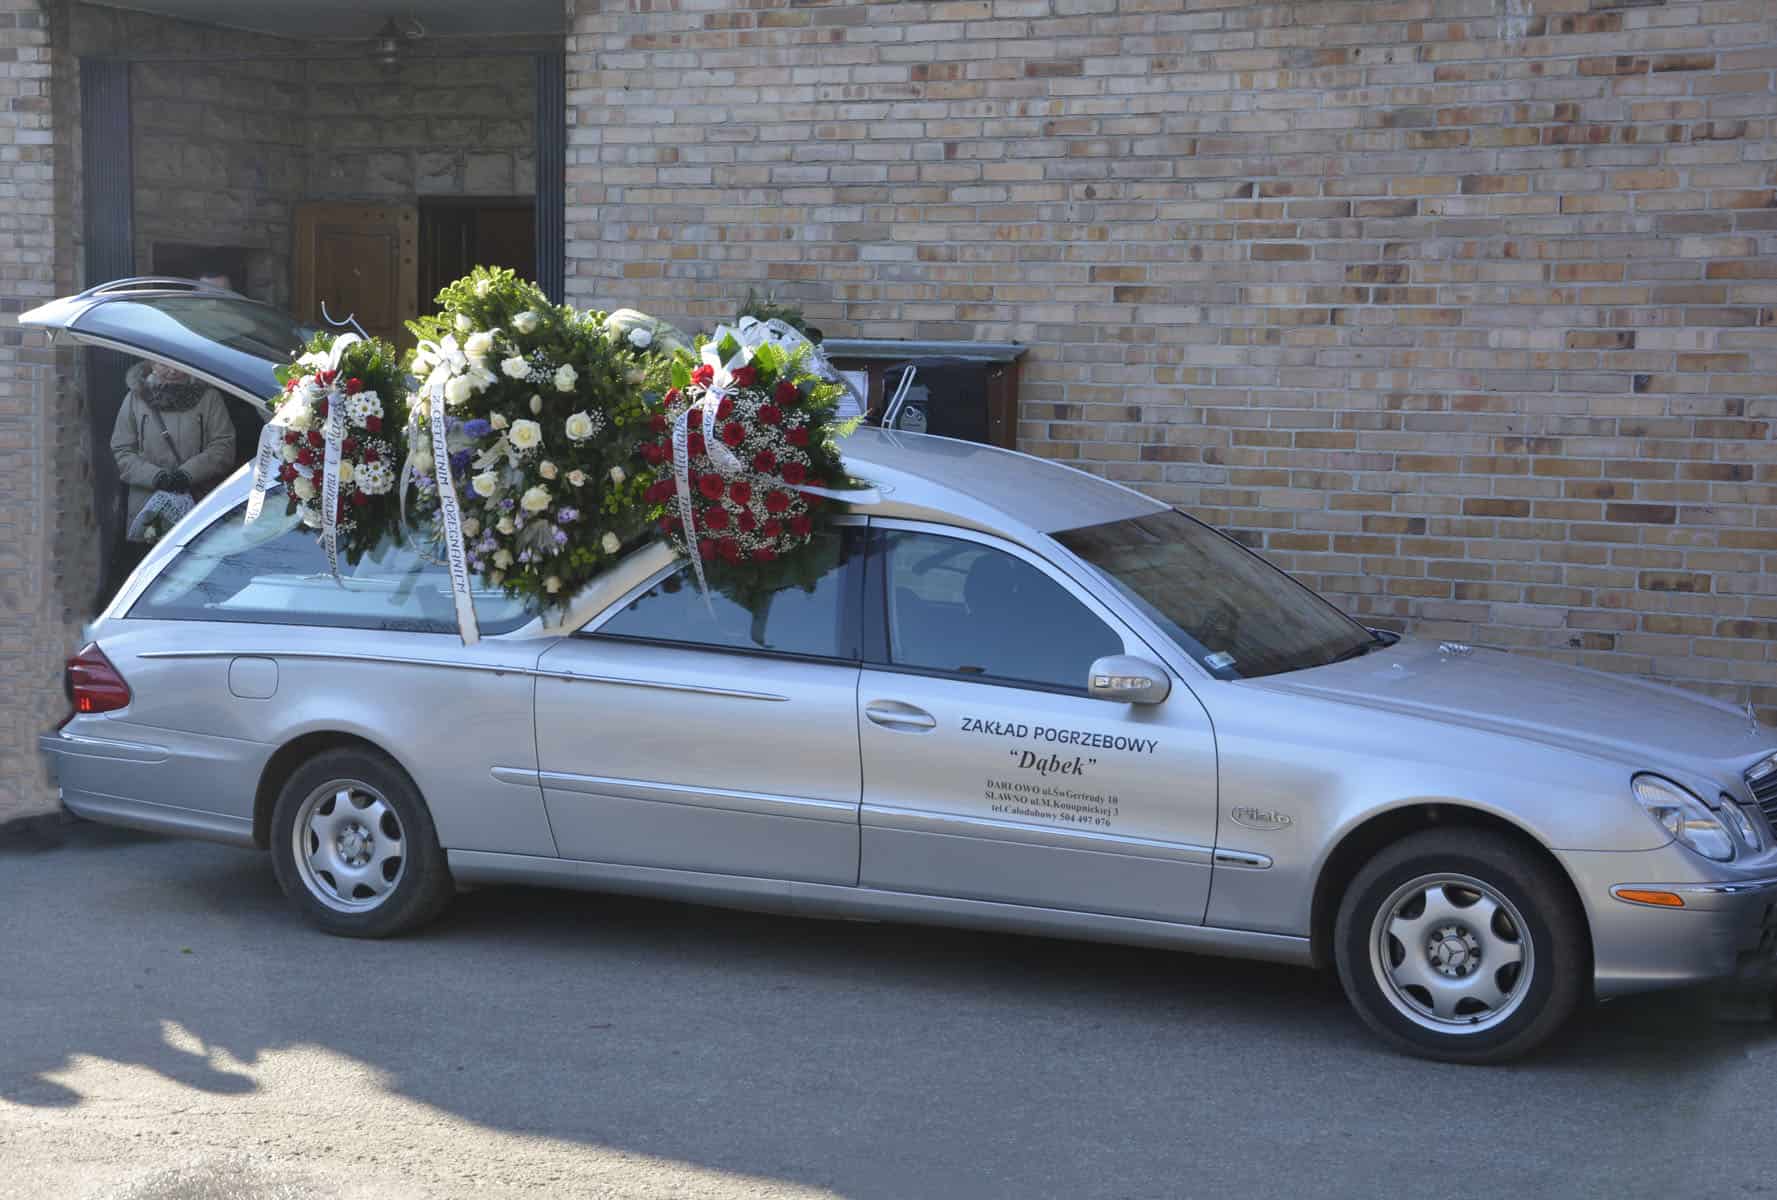 Mercedes benz karawan zakładu pogrzebowego dąbek